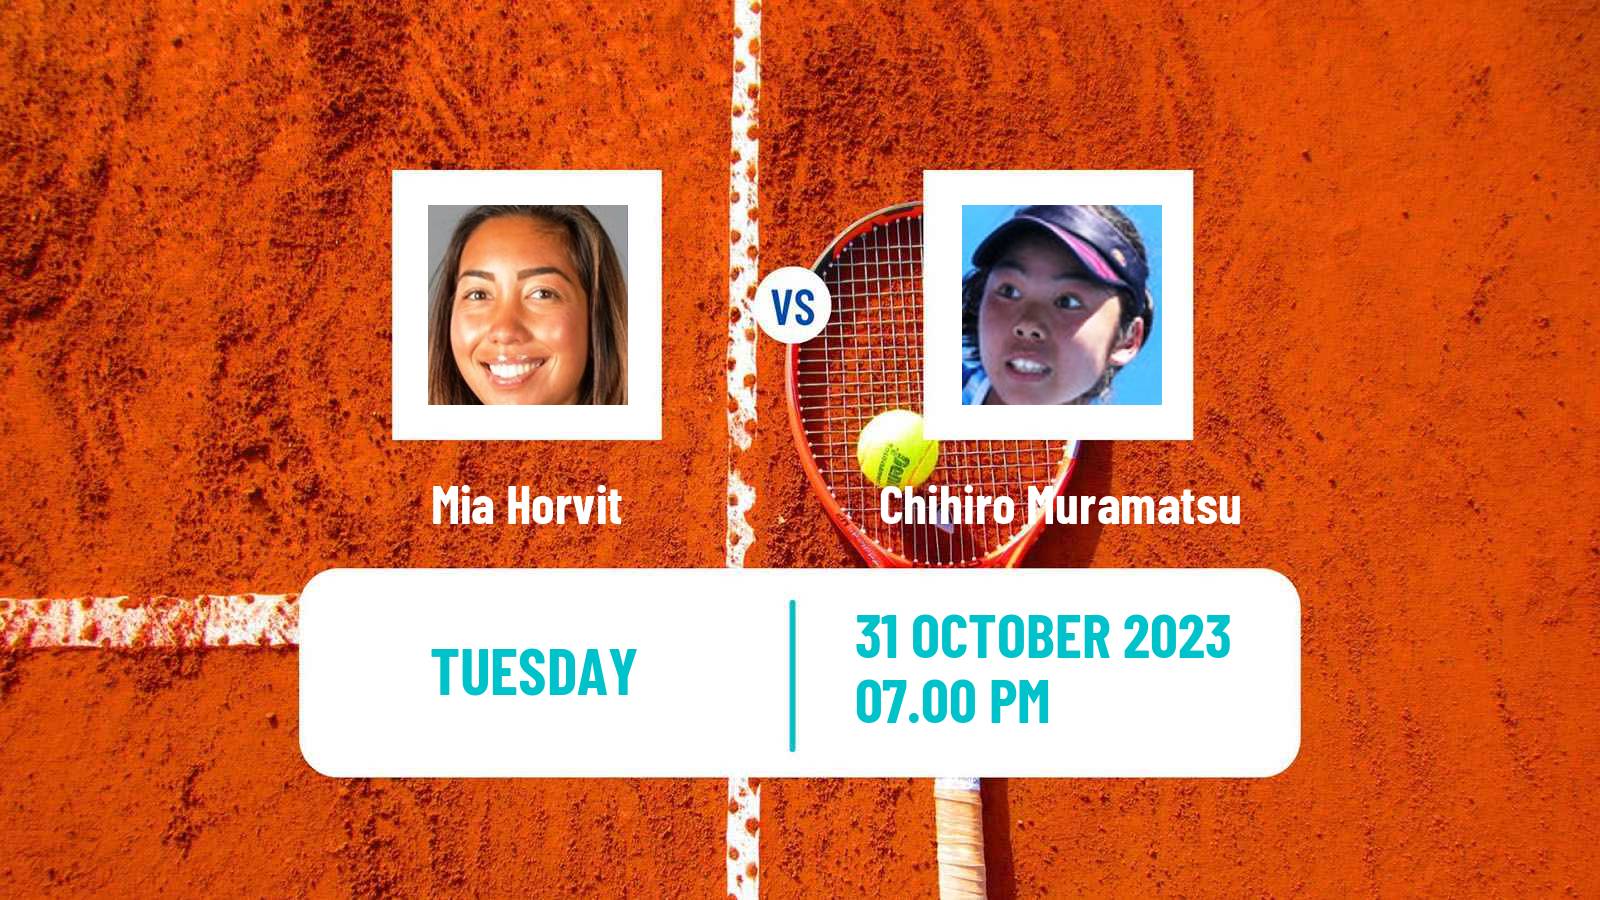 Tennis ITF W60 Sydney Women Mia Horvit - Chihiro Muramatsu